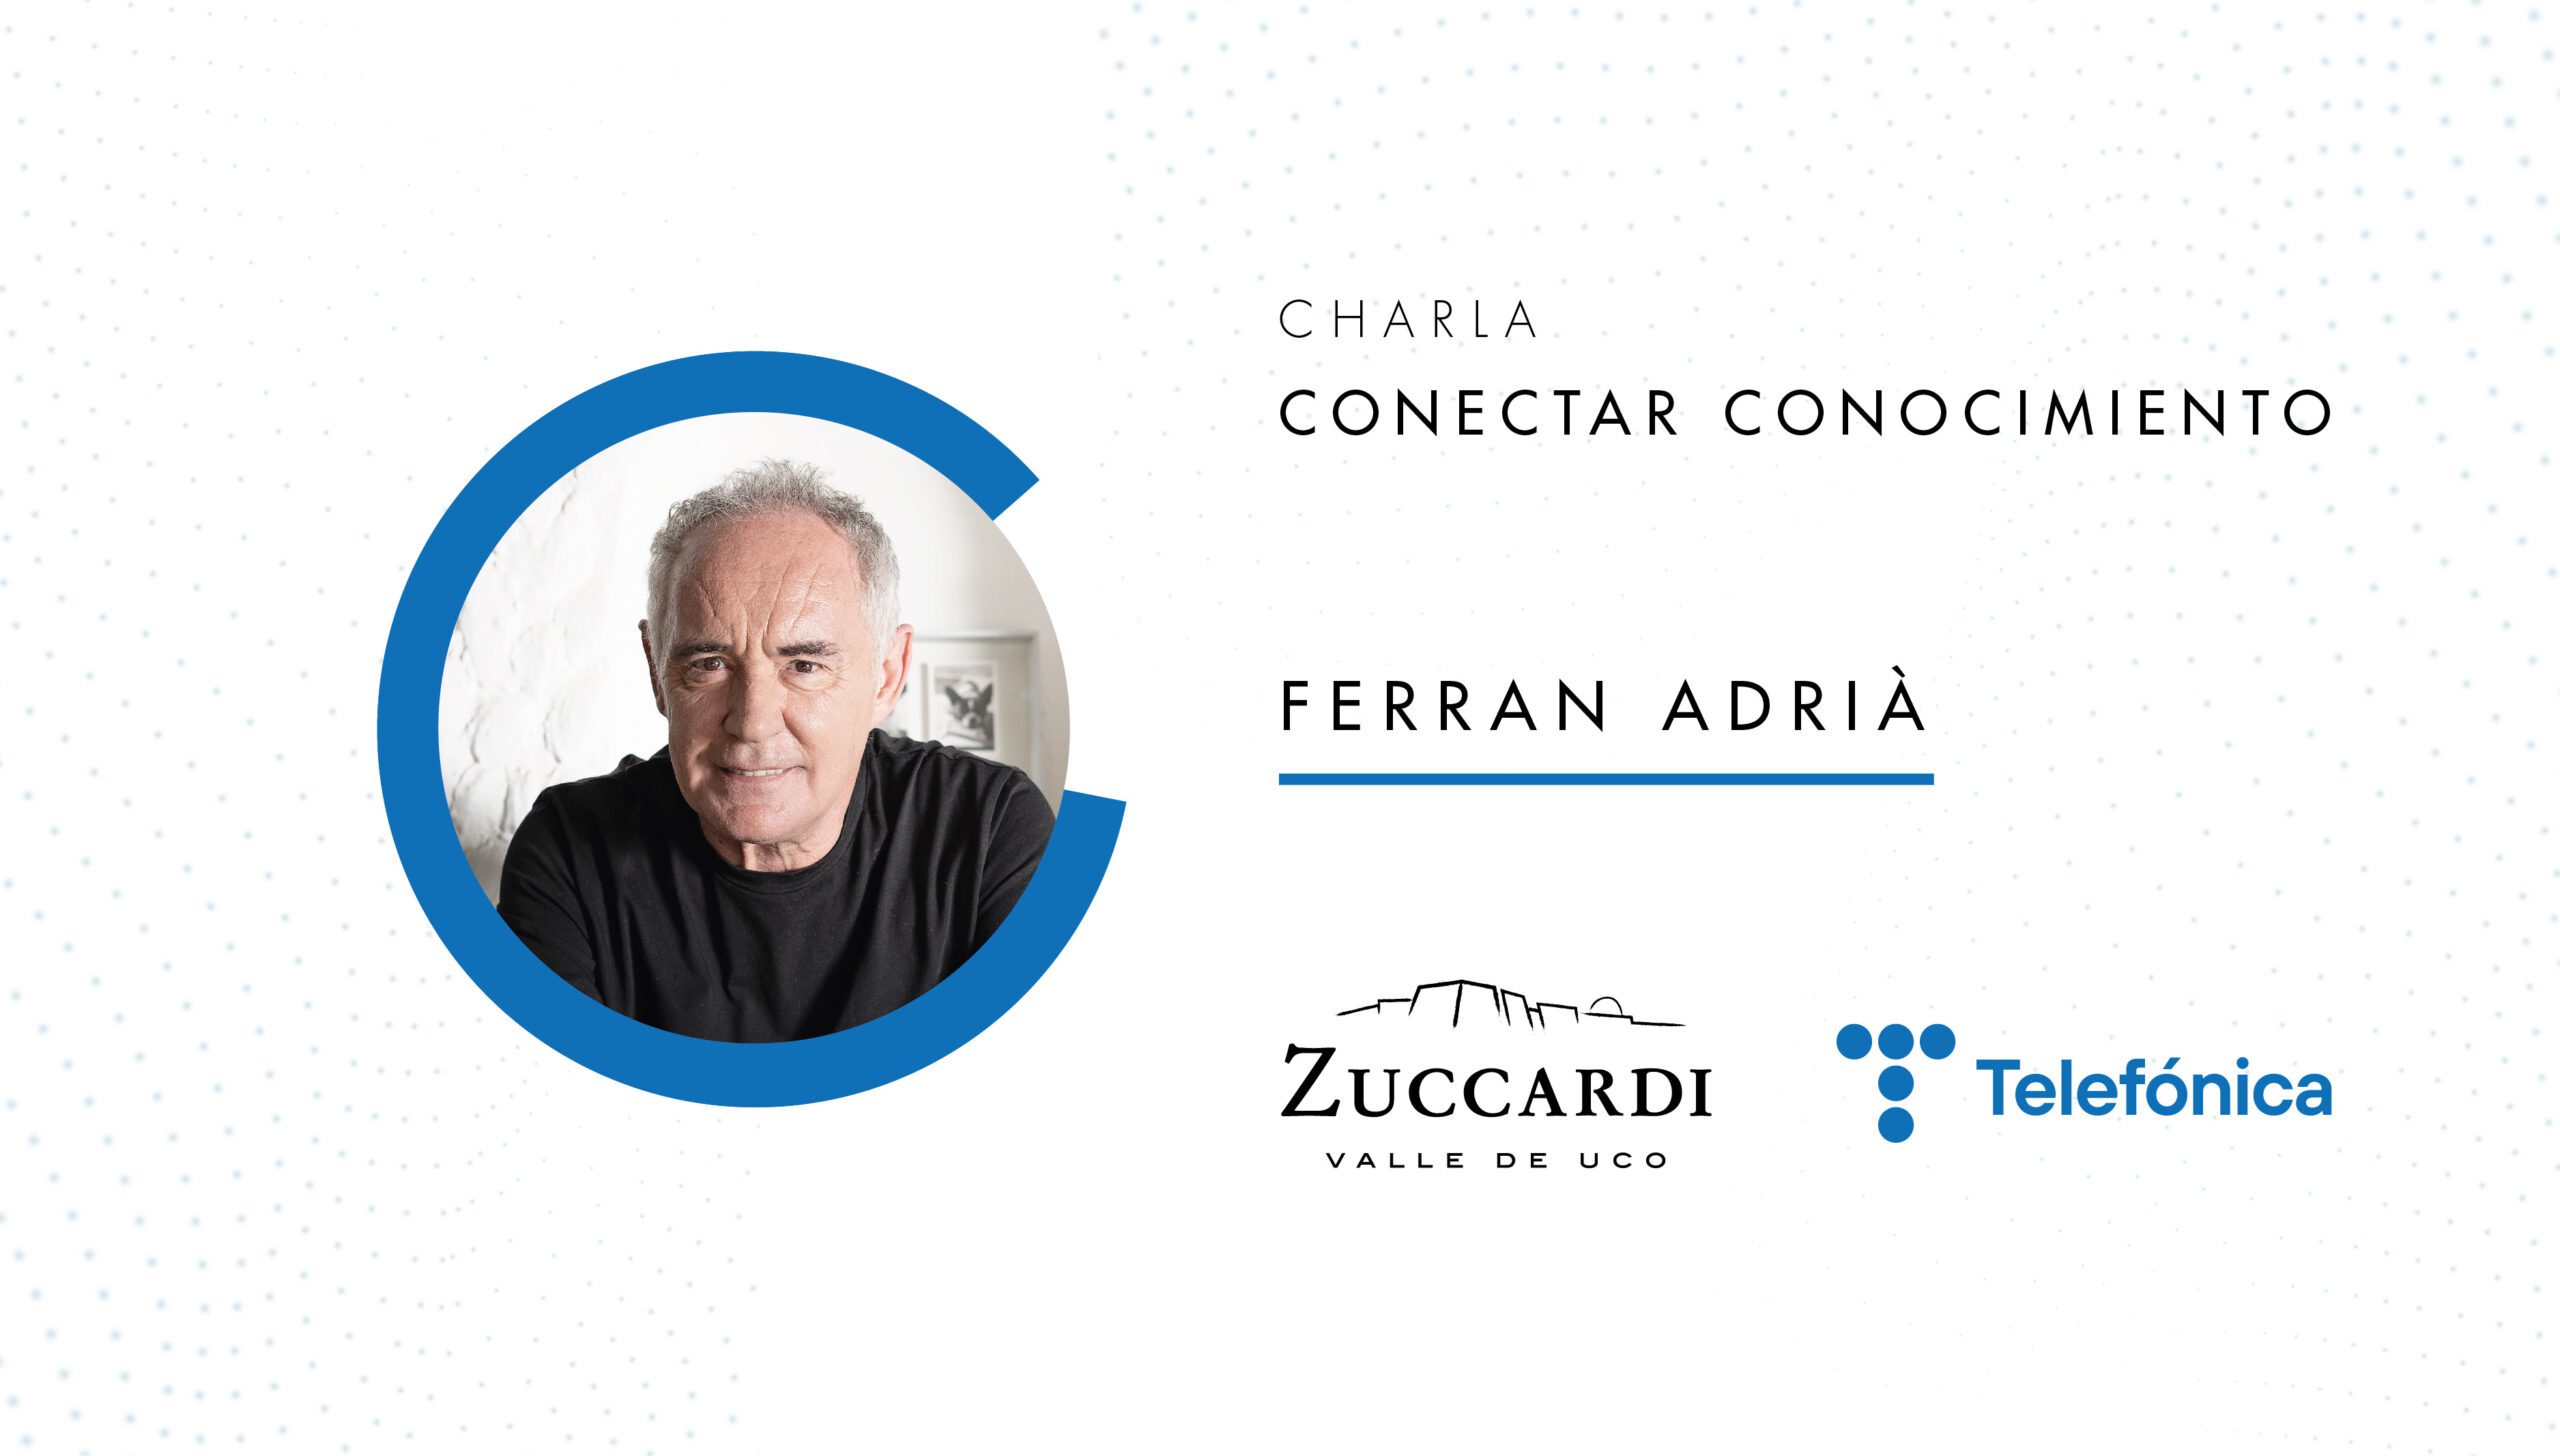 Con El Bulli, Ferran Adrià primero revolucionó la cocina española y trascendió fronteras, modificando la manera en que se cocinaba y comía